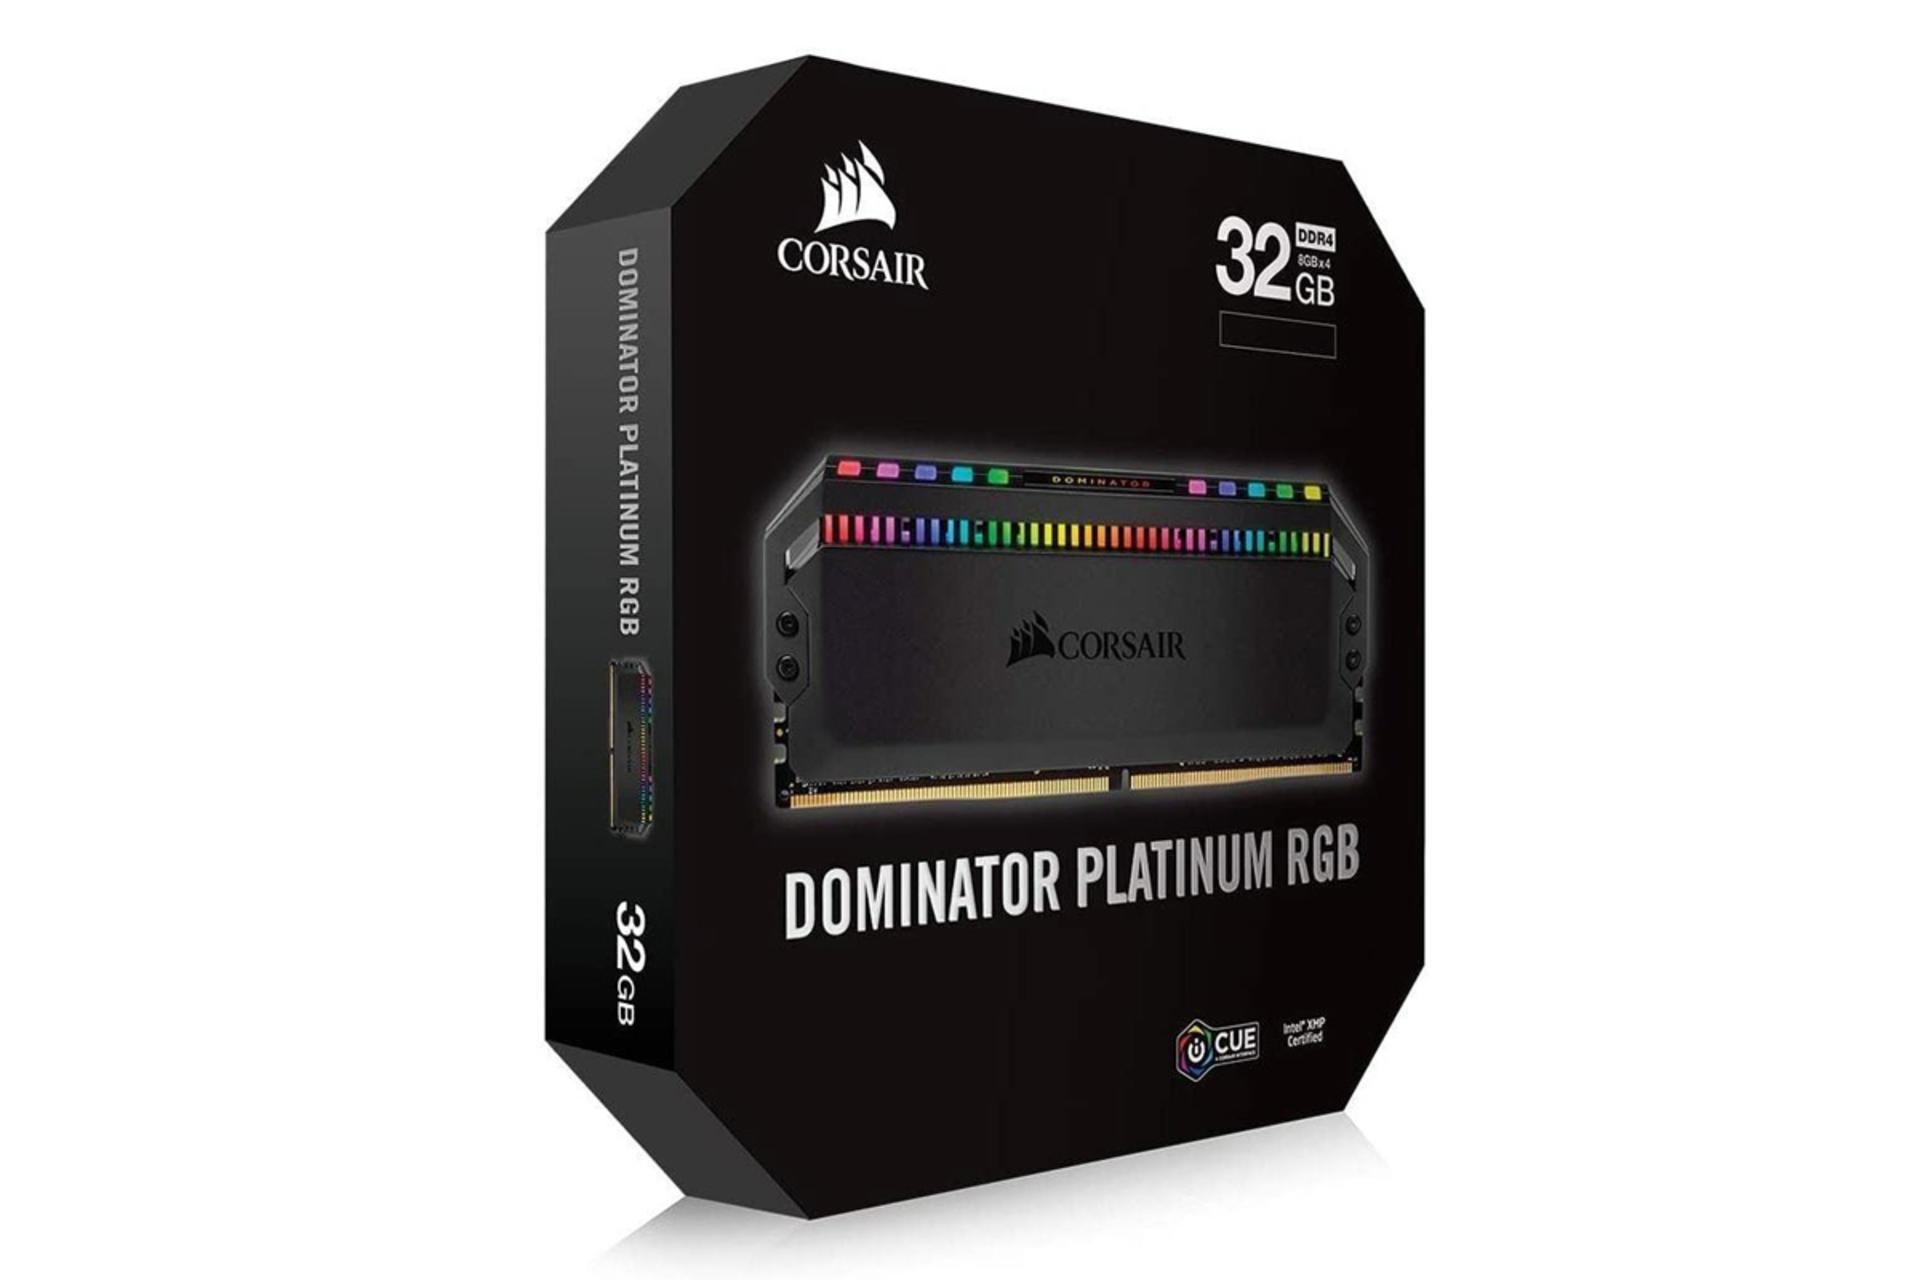 نمای جعبه رم کورسیر DOMINATOR PLATINUM RGB ظرفیت 32 گیگابایت (4x8) از نوع DDR4-3600